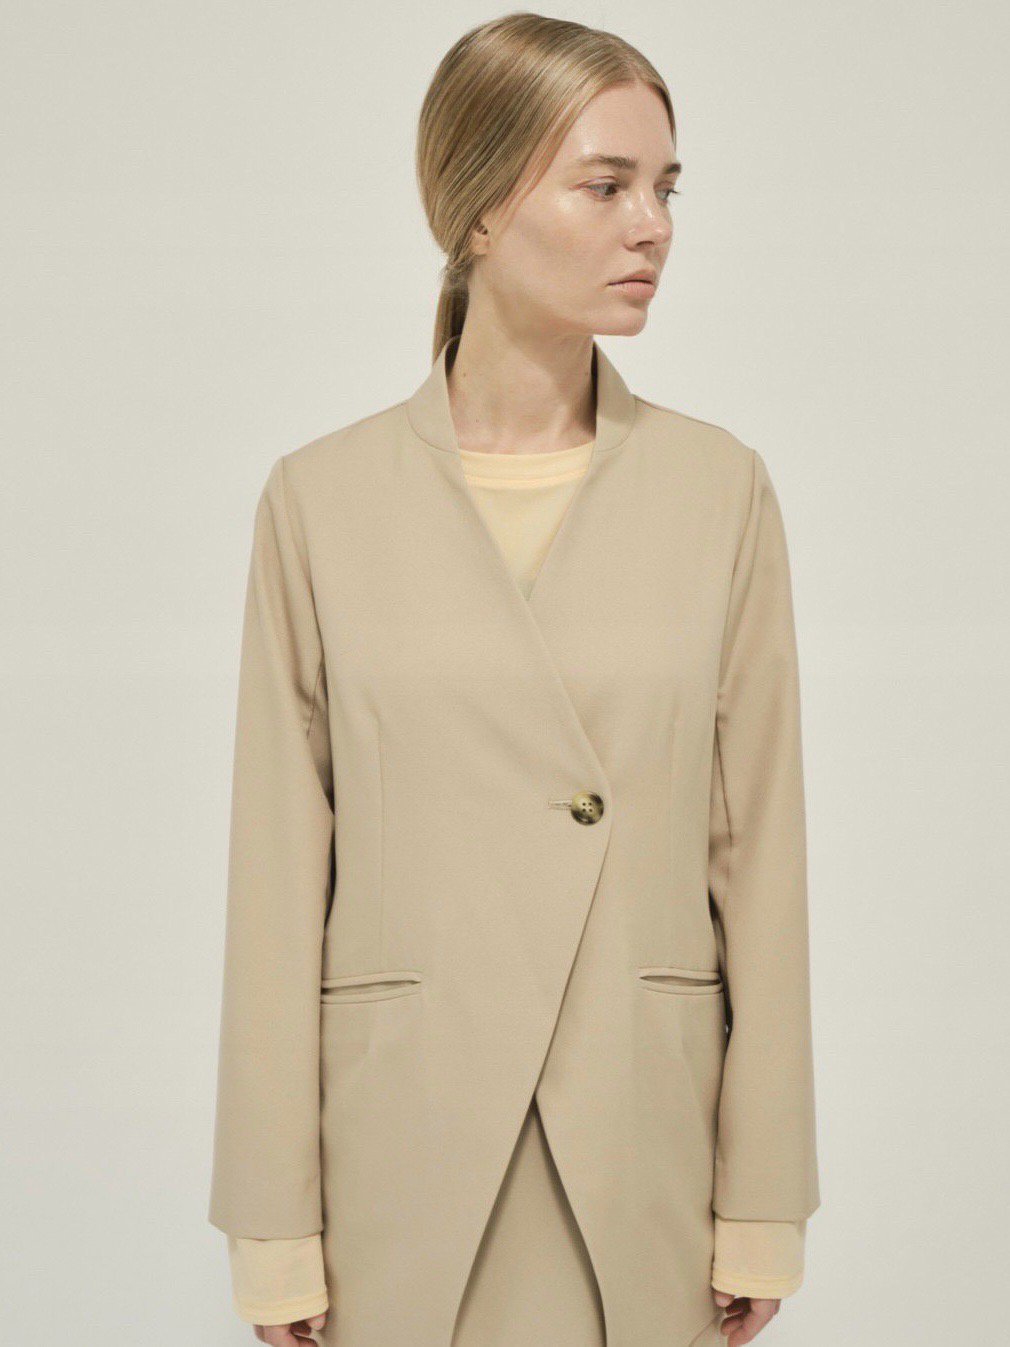 Ժ١No-collar jacket / beige